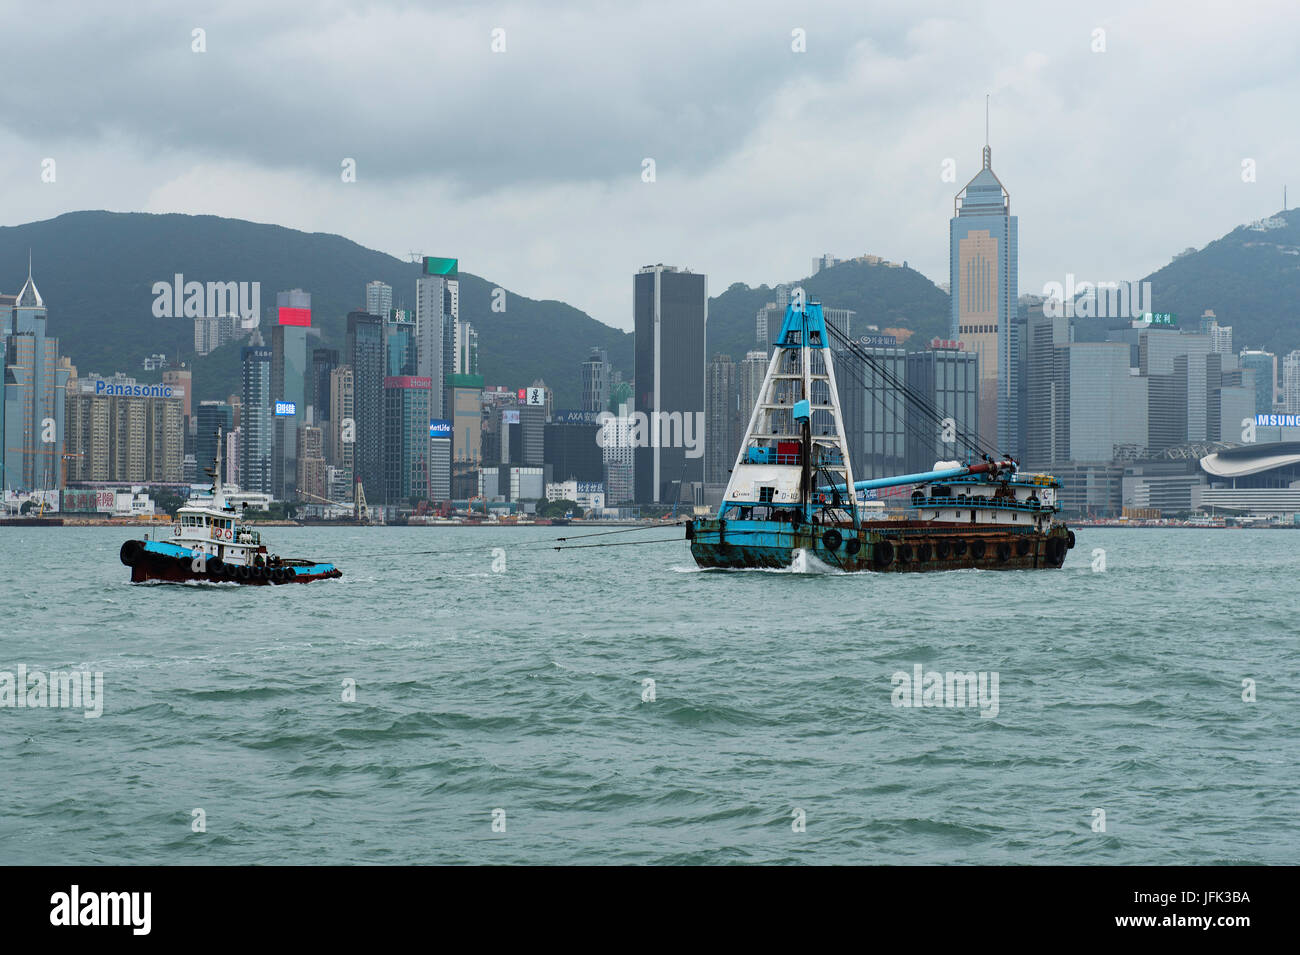 Skyline di Hong Kong nella stagione delle piogge con la nuvola di smog Foto Stock